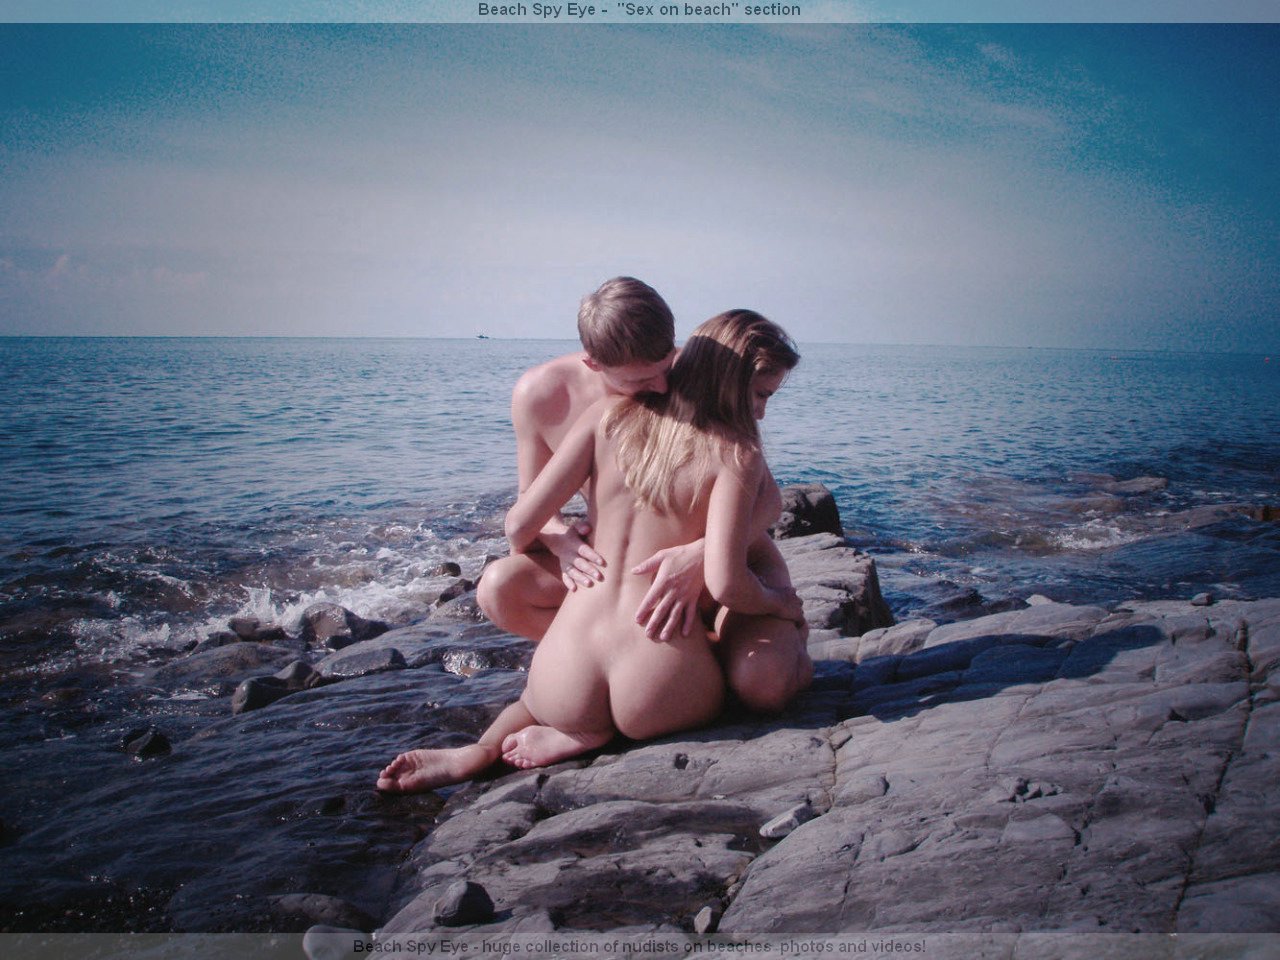 https://pbs.bulkjerk.com/39/3926/pictures/4023-7-voyeur-beach-sex.jpg